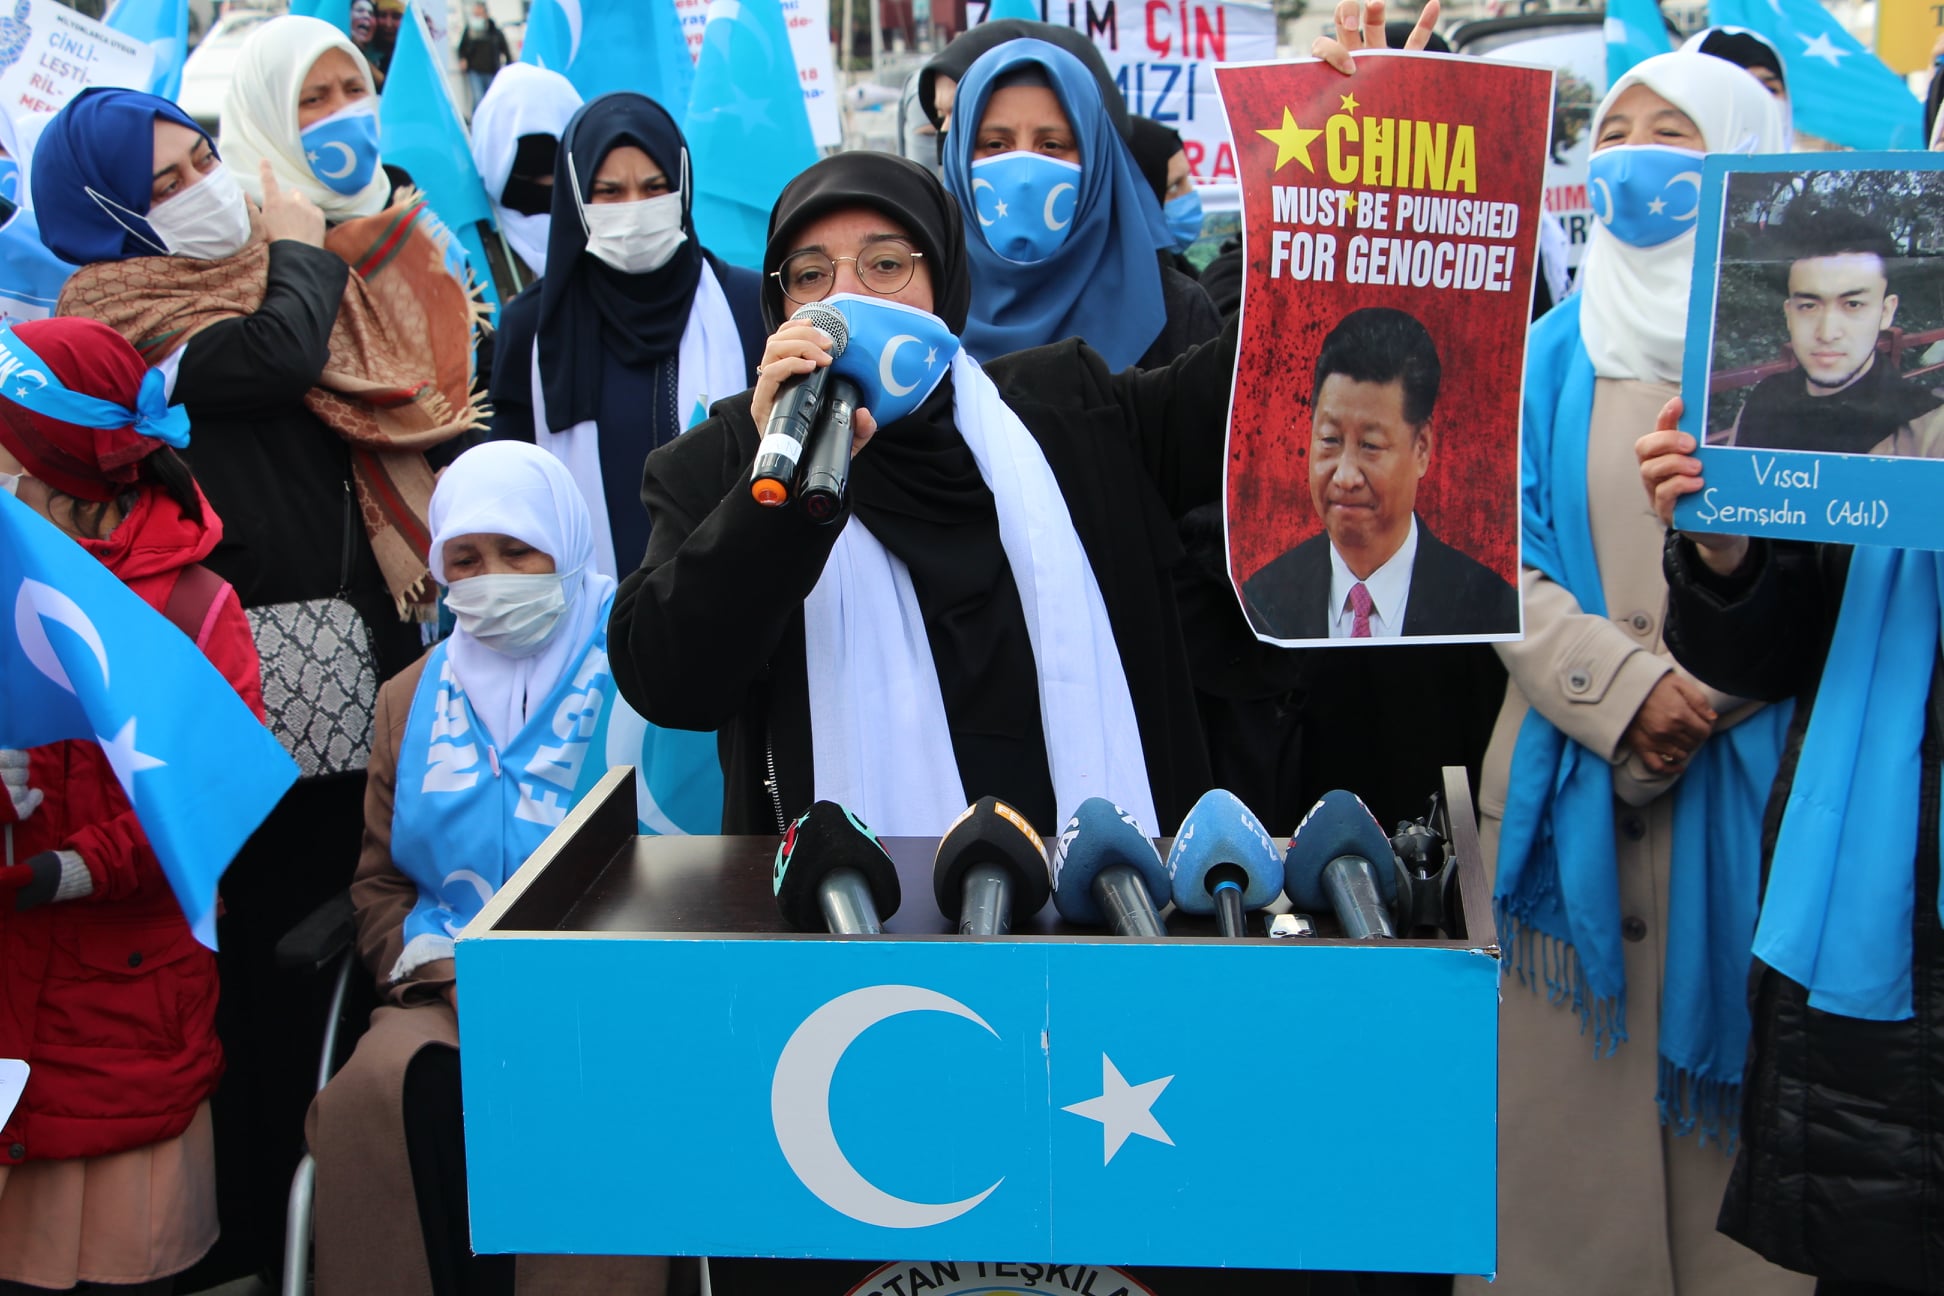 أويغور الصين: بعد أن ثبت ارتكاب الإبادة بحقهم، هل يتحرك العالم؟